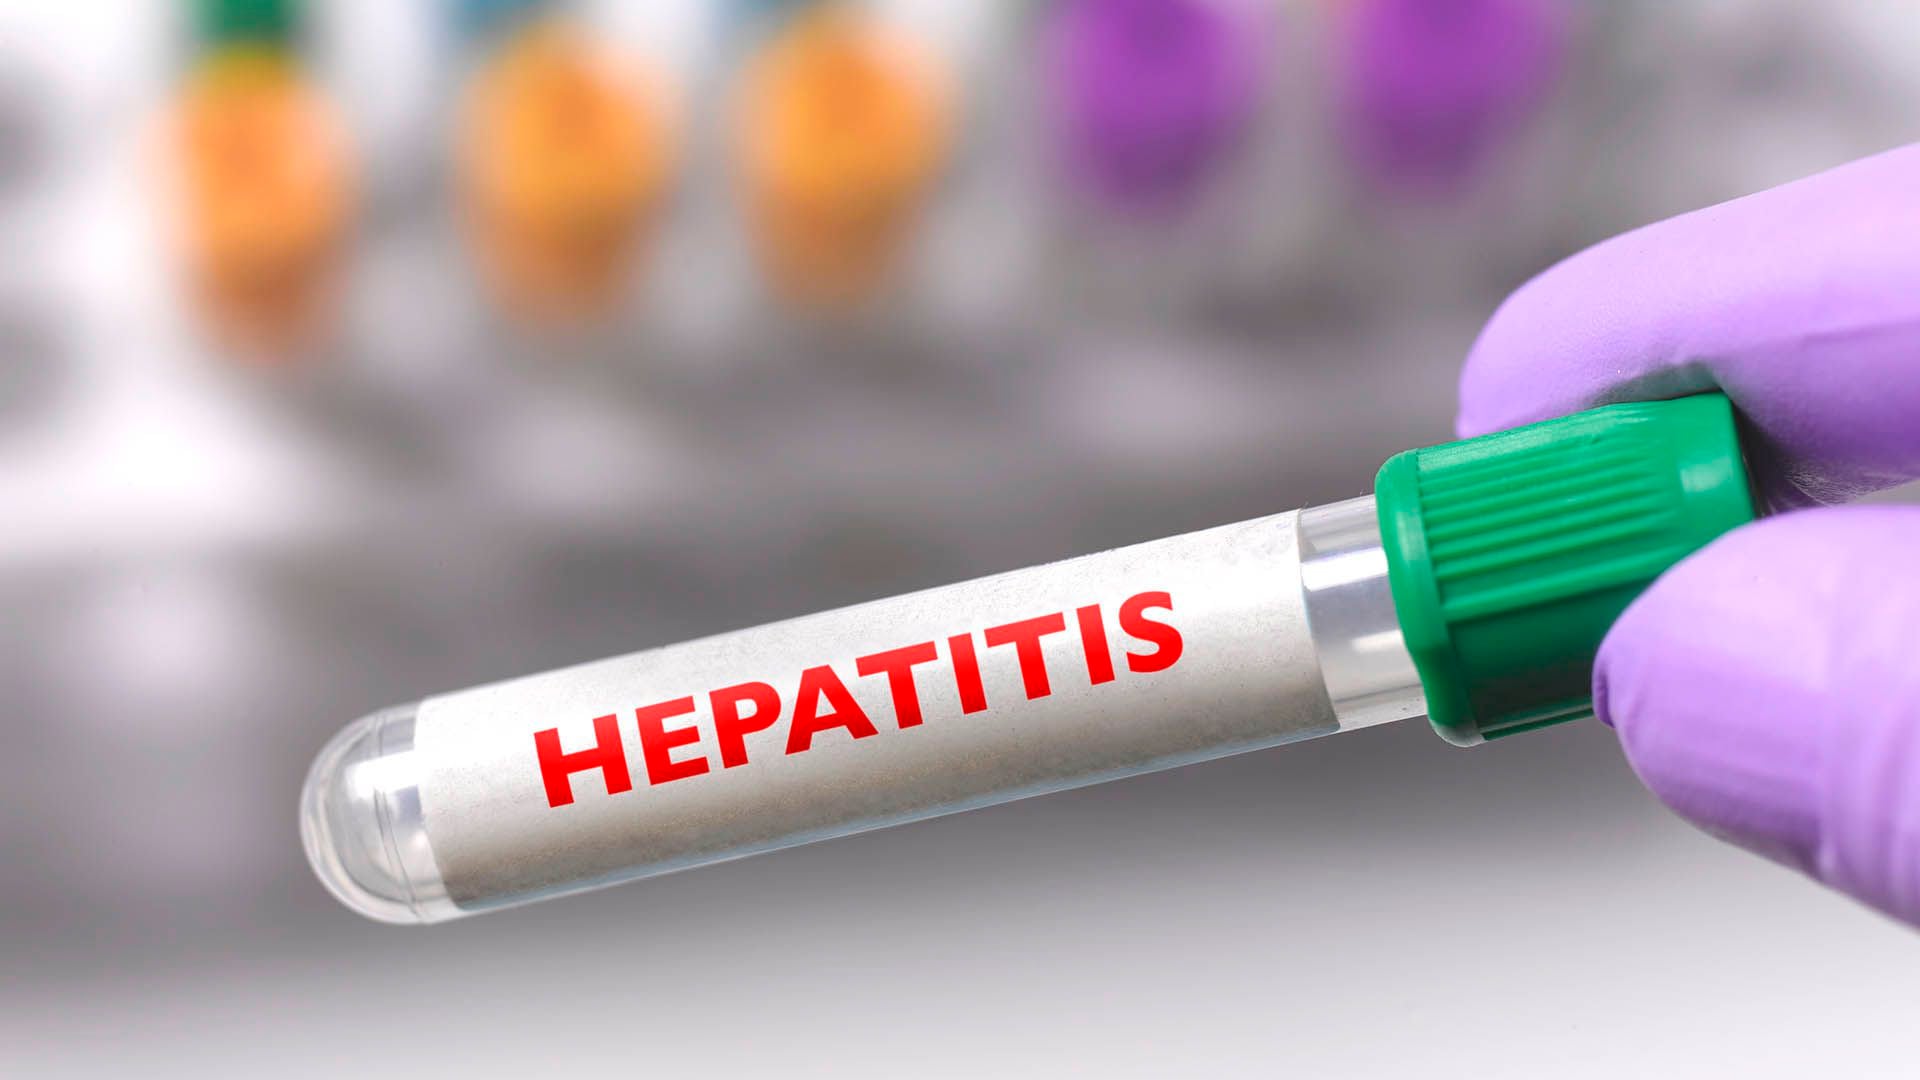 La OMS se propone para 2030 reducir en un 90% las nuevas infecciones de hepatitis B y C y en un 65% los cánceres de hígado y la cirrosis (Getty Images)